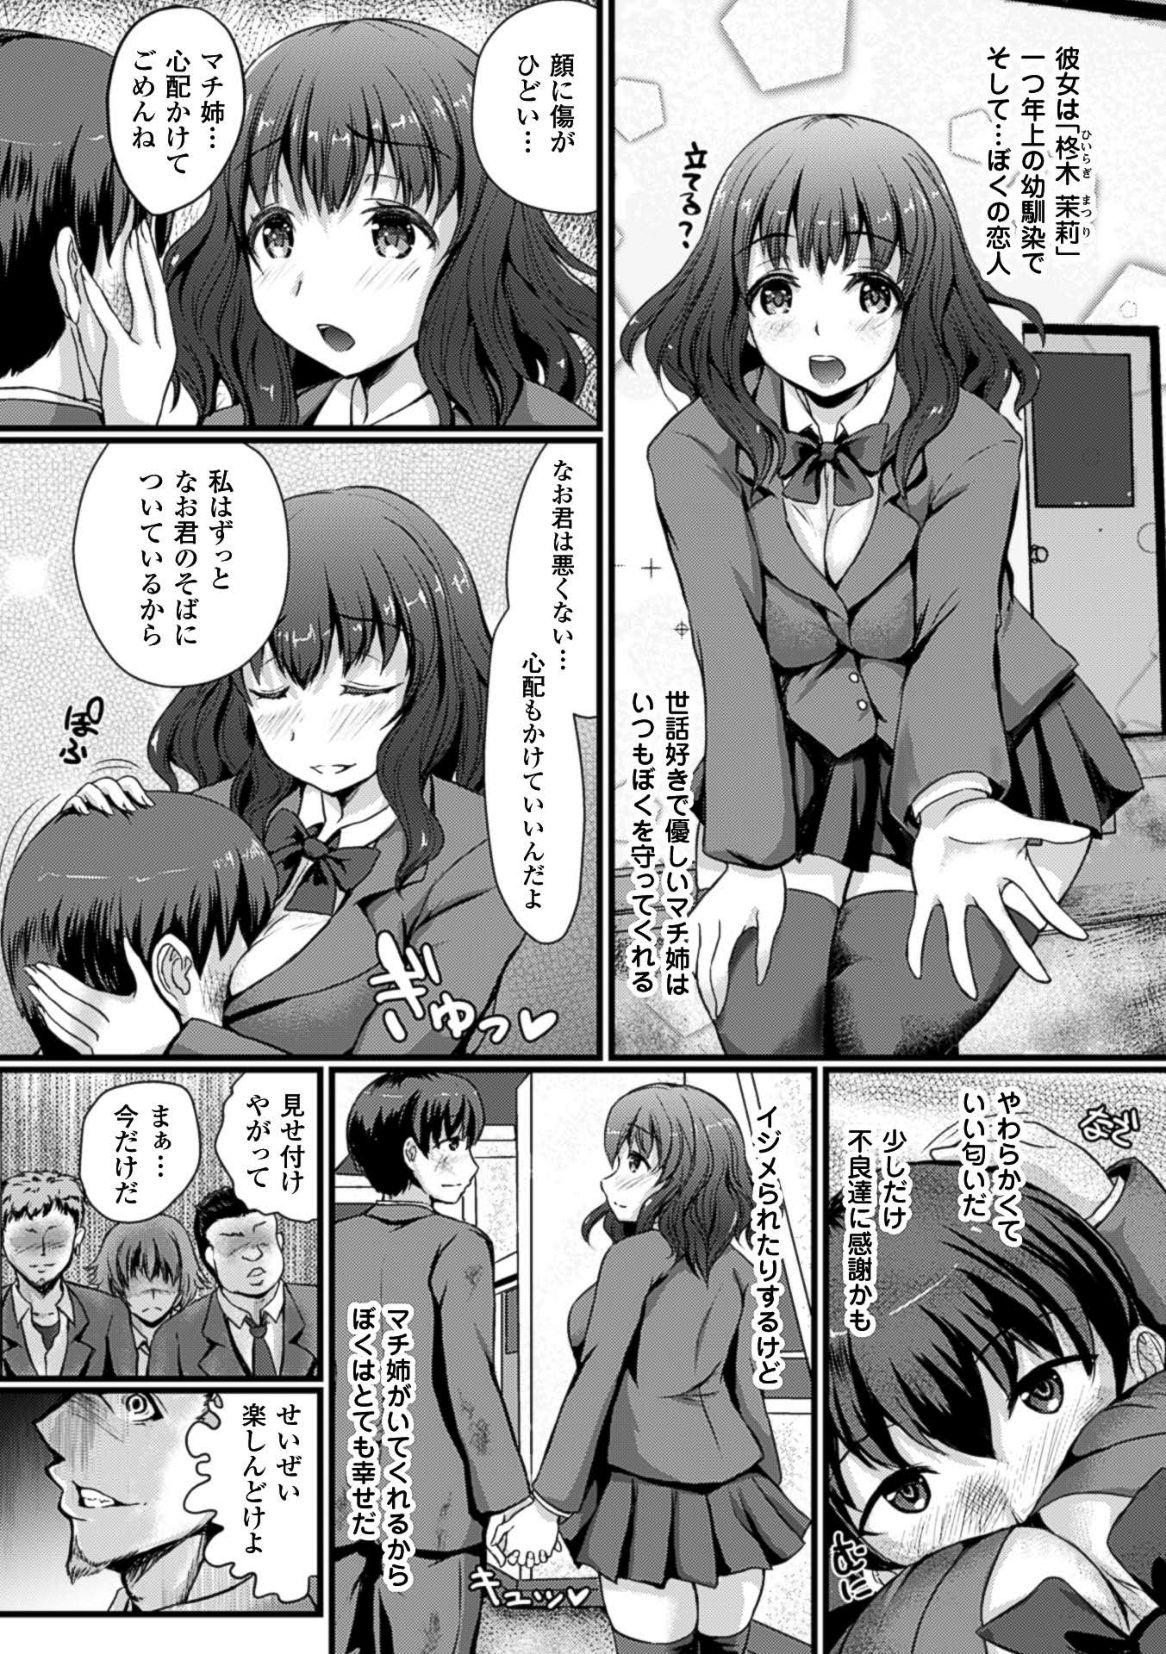 2D Comic Magazine Botebara Sex de Nikubenki Ochi! Vol. 2 23